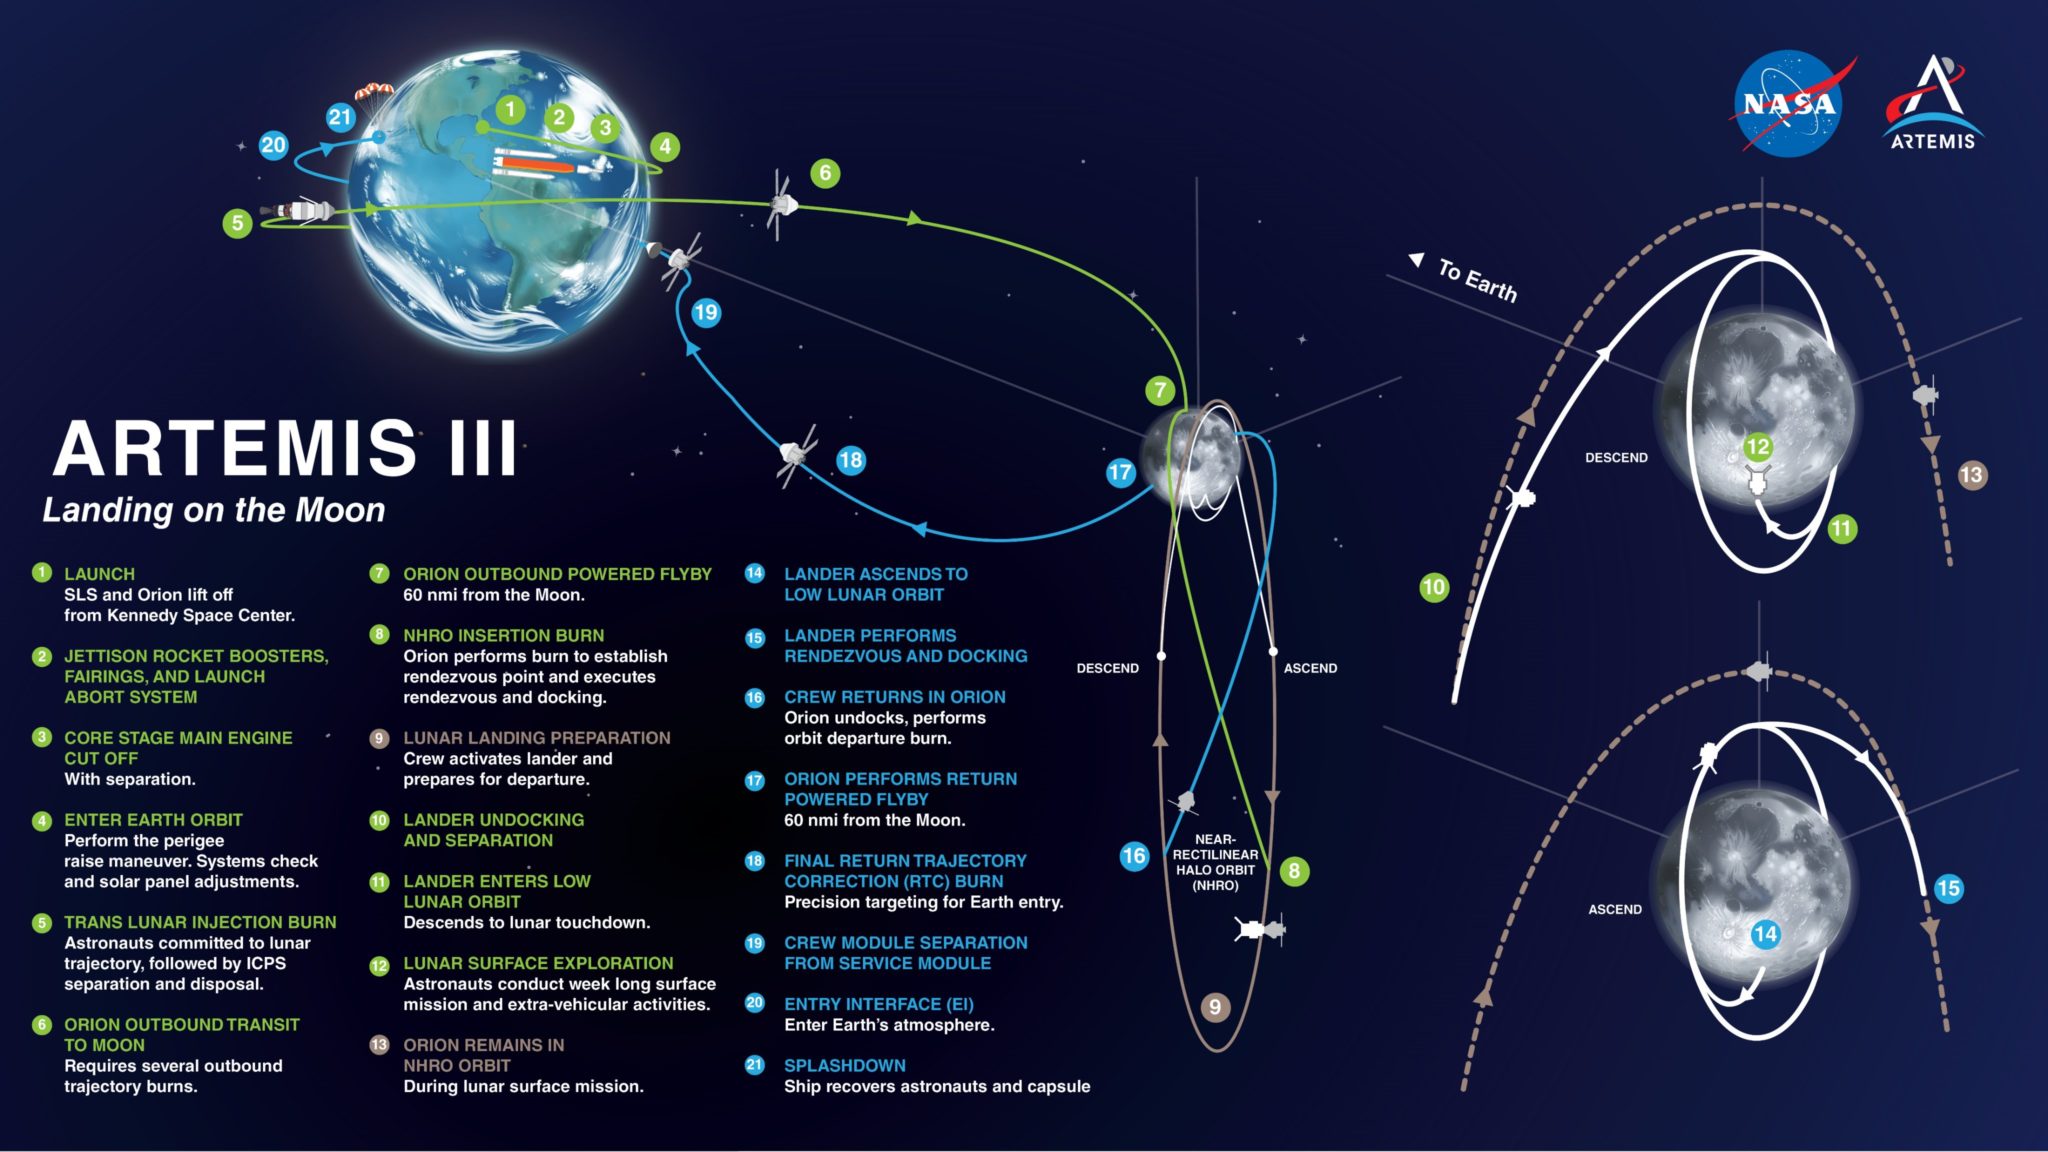 Artemis III Mission Profile 2025 1 2048x1152 